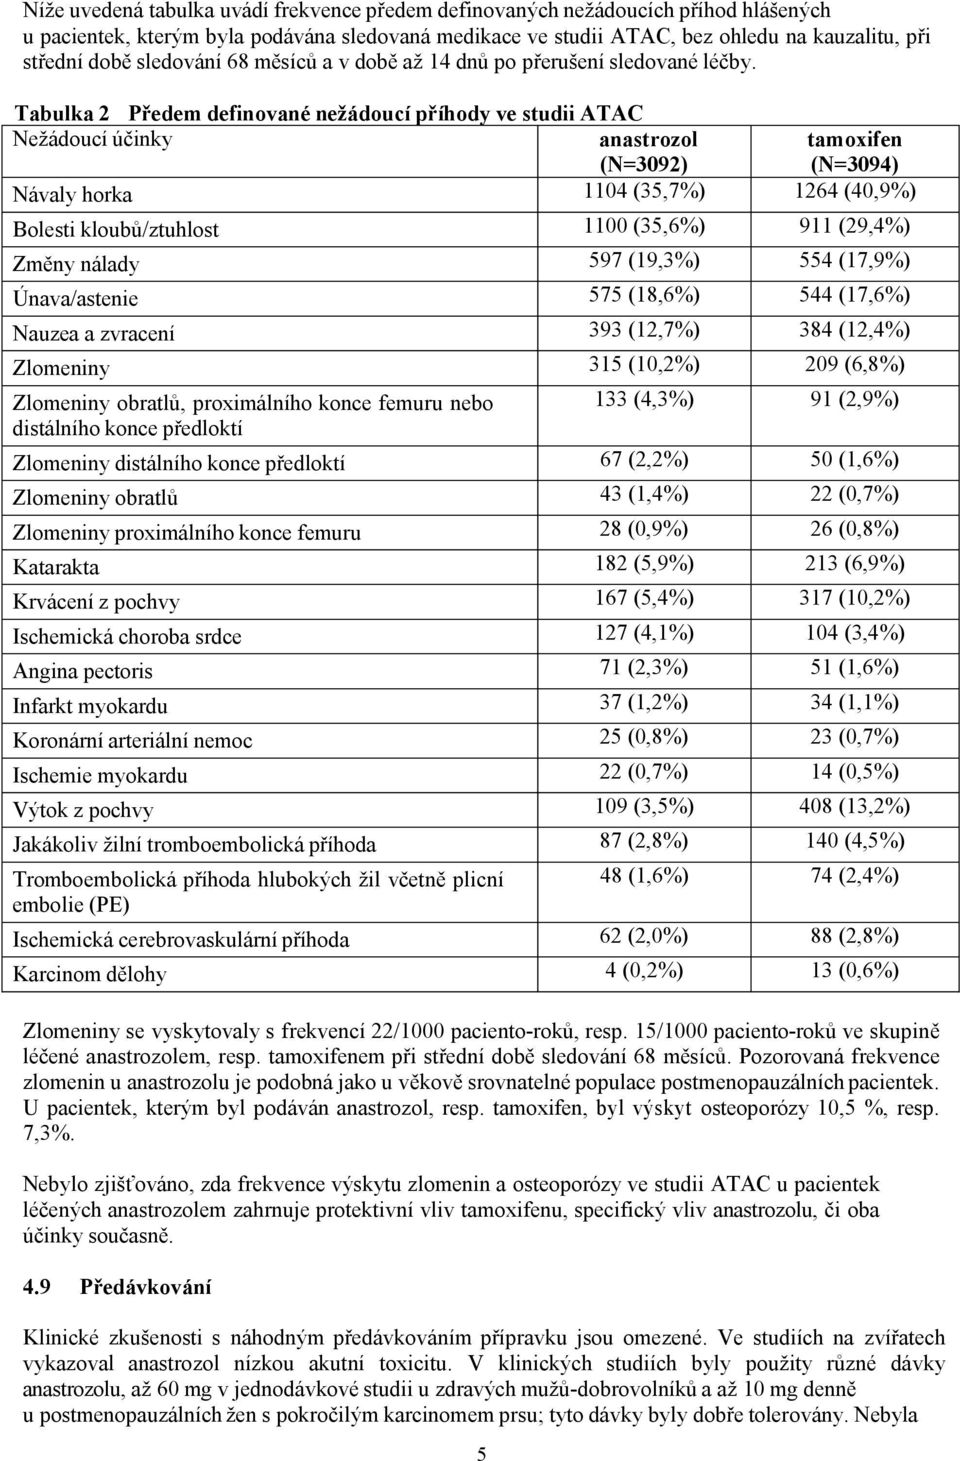 Tabulka 2 Předem definované nežádoucí příhody ve studii ATAC Nežádoucí účinky anastrozol (N=3092) tamoxifen (N=3094) Návaly horka 1104 (35,7%) 1264 (40,9%) Bolesti kloubů/ztuhlost 1100 (35,6%) 911